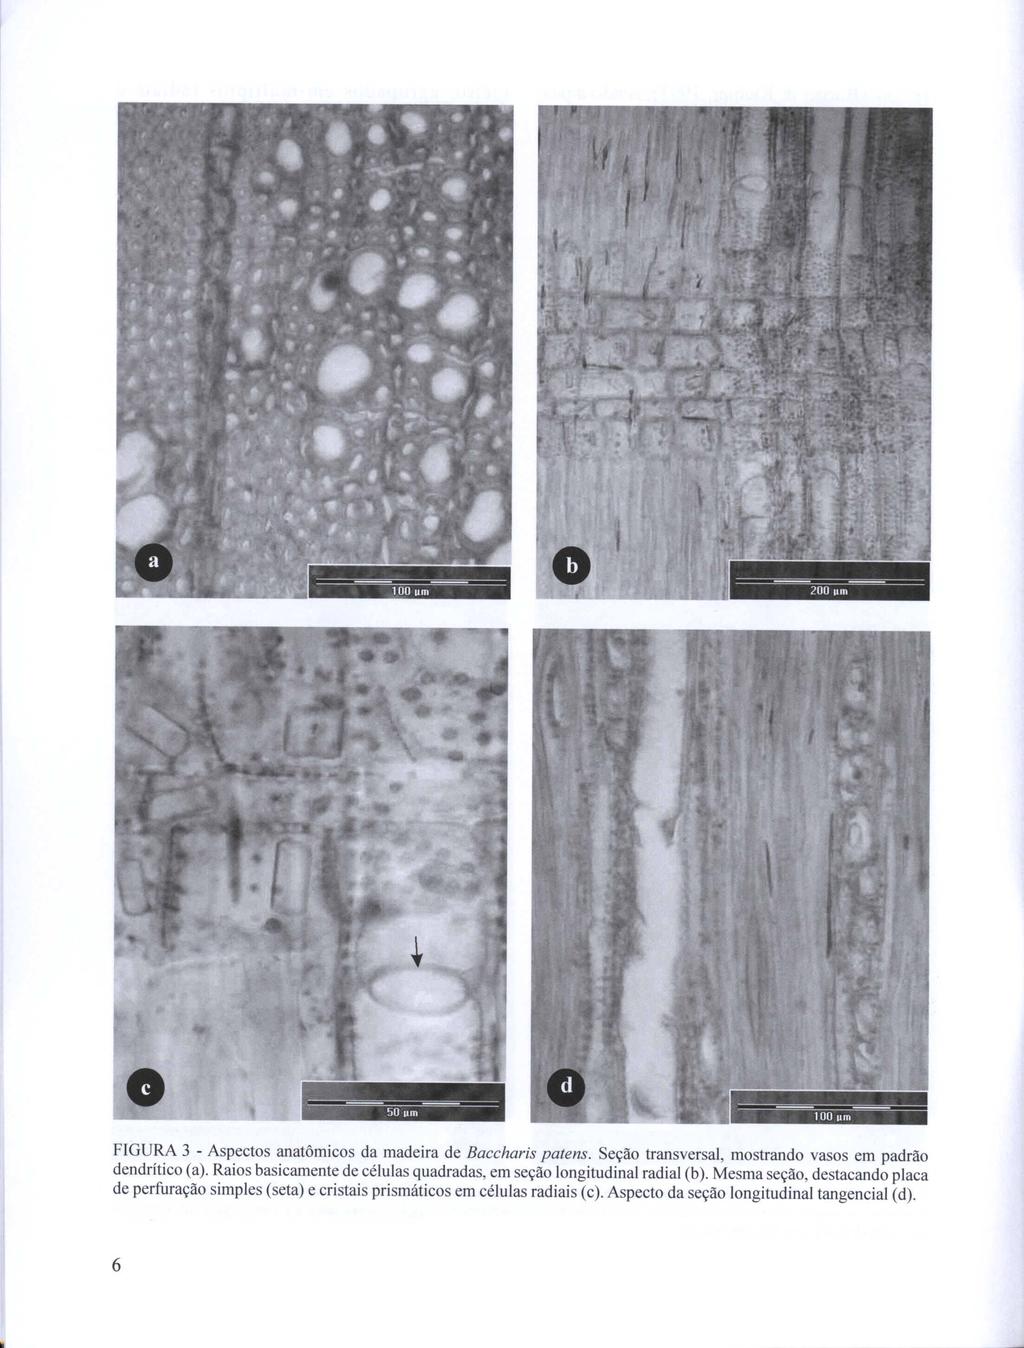 -- -- -- -- 100 um 200 um FIGURA 3 - Aspectos anatômicos da madeira de Baccharis patens. Seção transversal, mostrando vasos em padrão dendrítico (a).